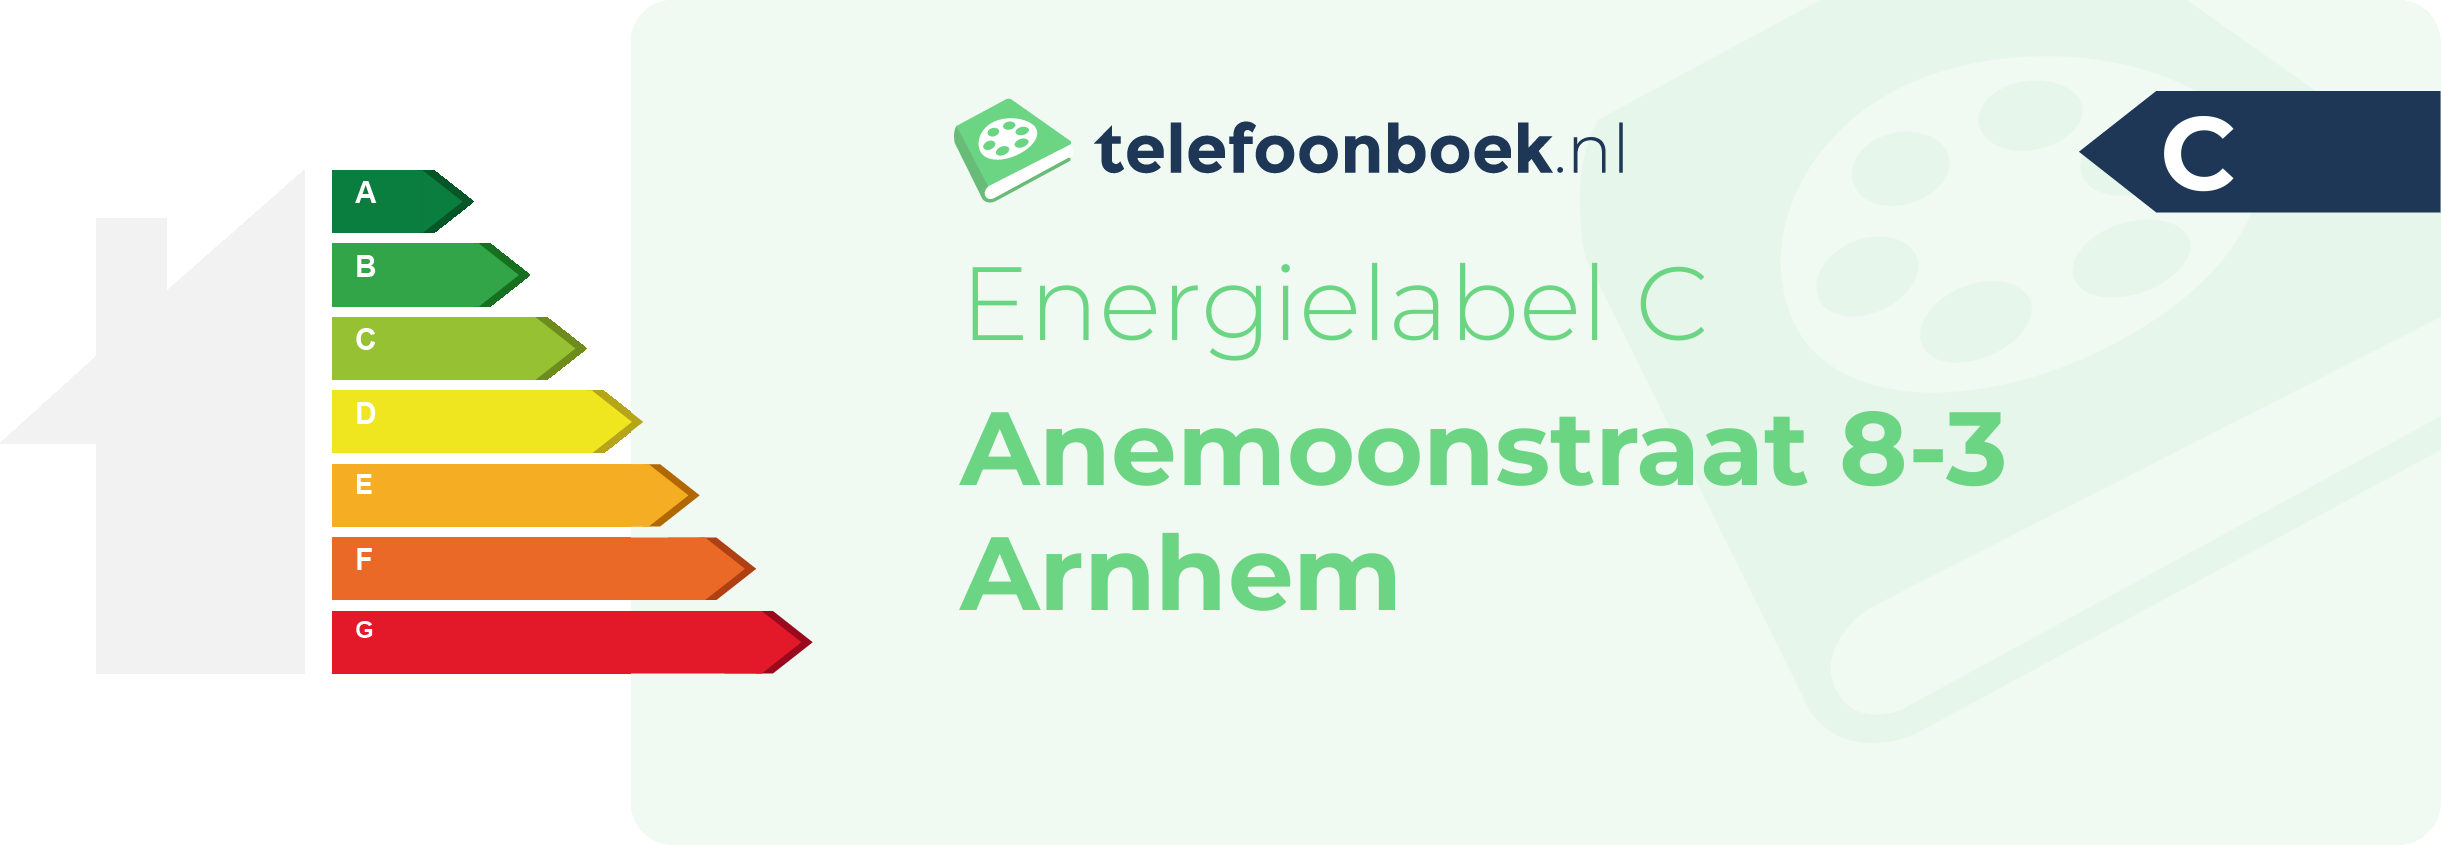 Energielabel Anemoonstraat 8-3 Arnhem